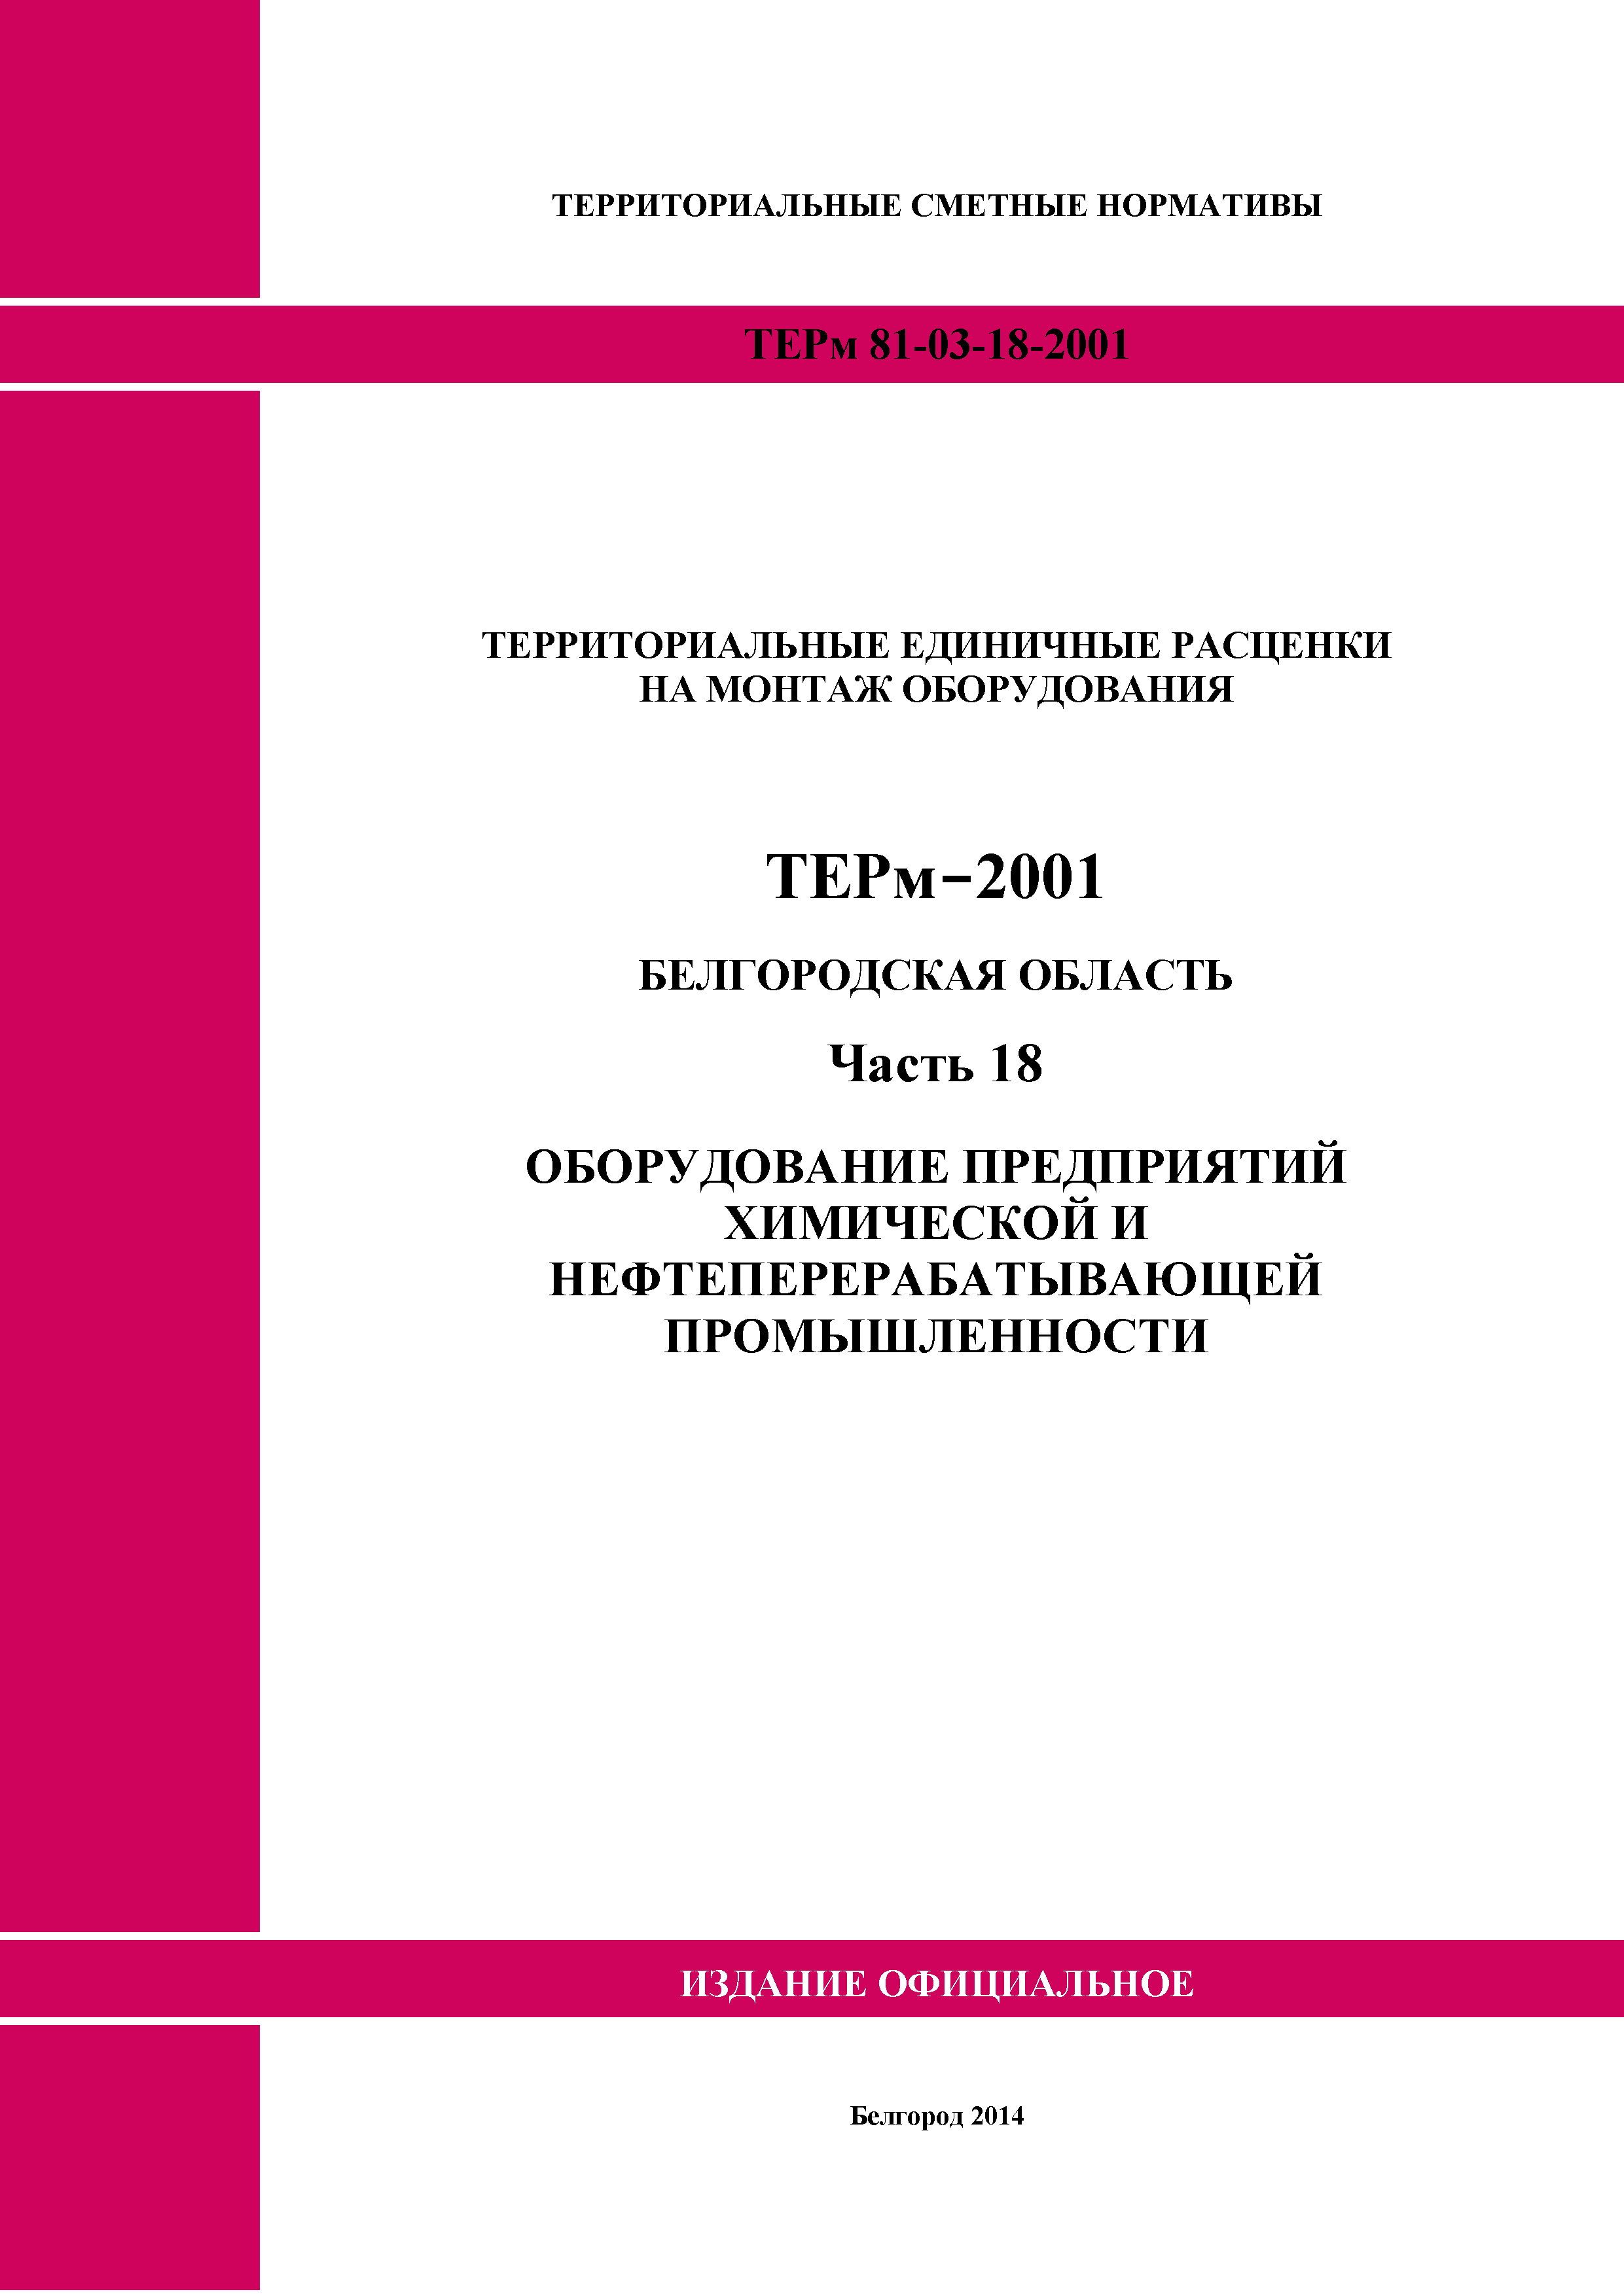 ТЕРм Белгородская область 81-03-18-2001